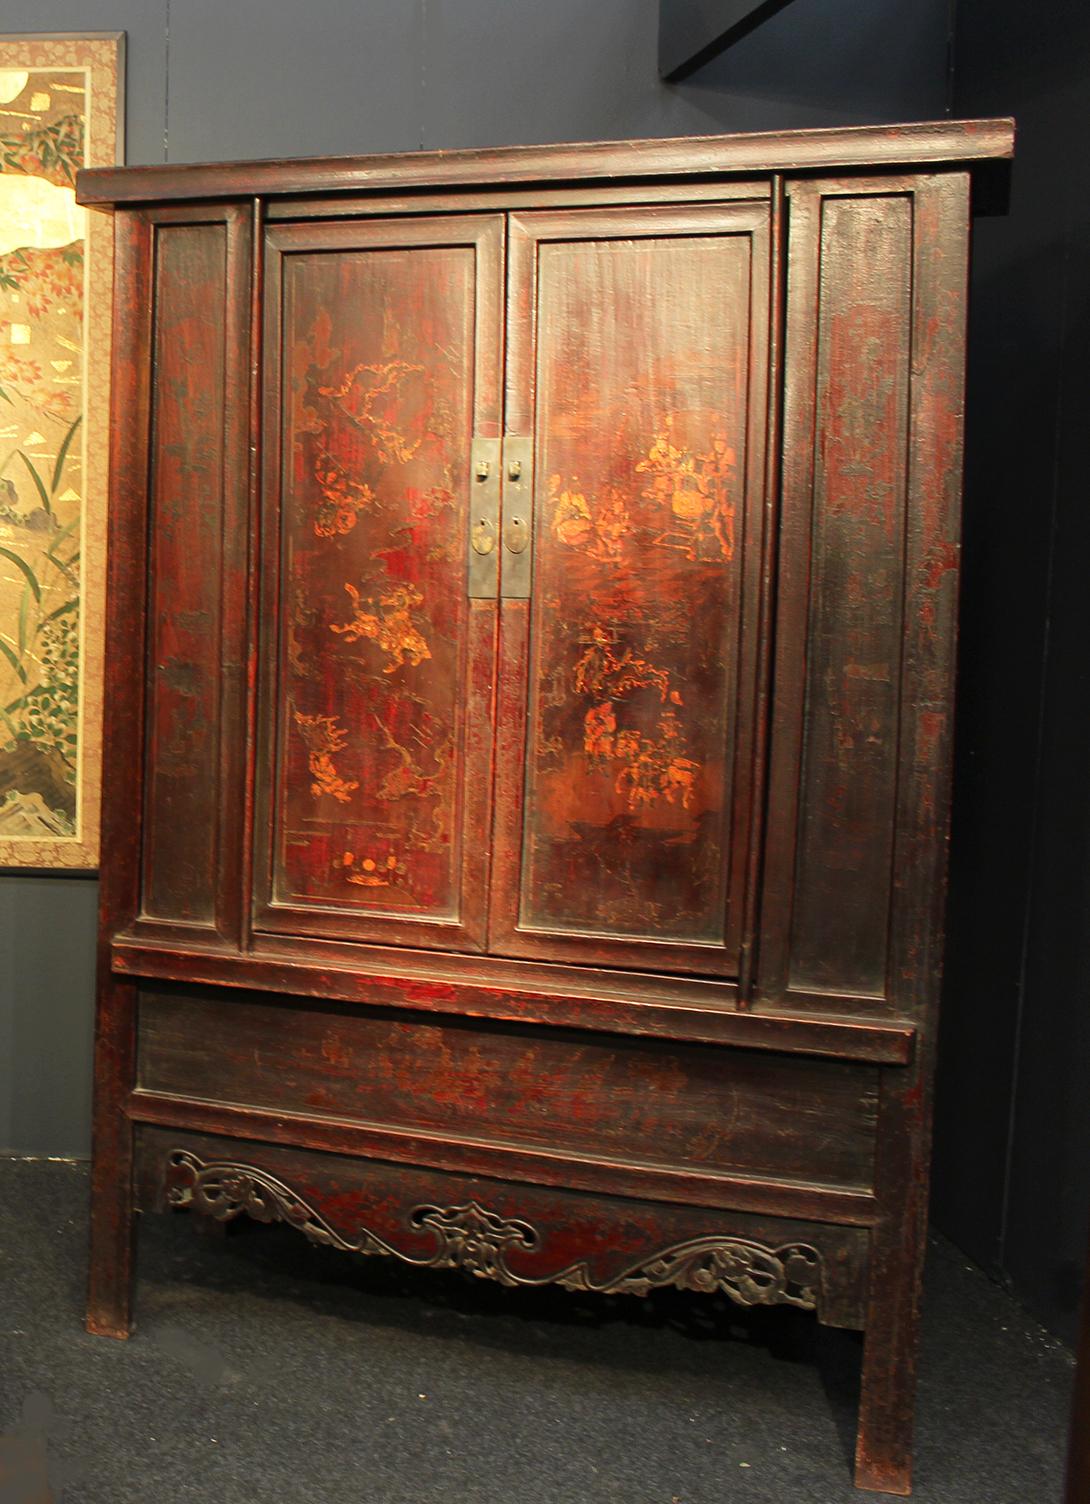 Une belle et rare paire de meubles de bibliothèque de la dynastie Qing du XVIIIe siècle, en bois d'orme de Chine.
Chaque meuble robuste présente une laque épaisse originale et une forme légèrement trapézoïdale.
La silhouette présente une belle